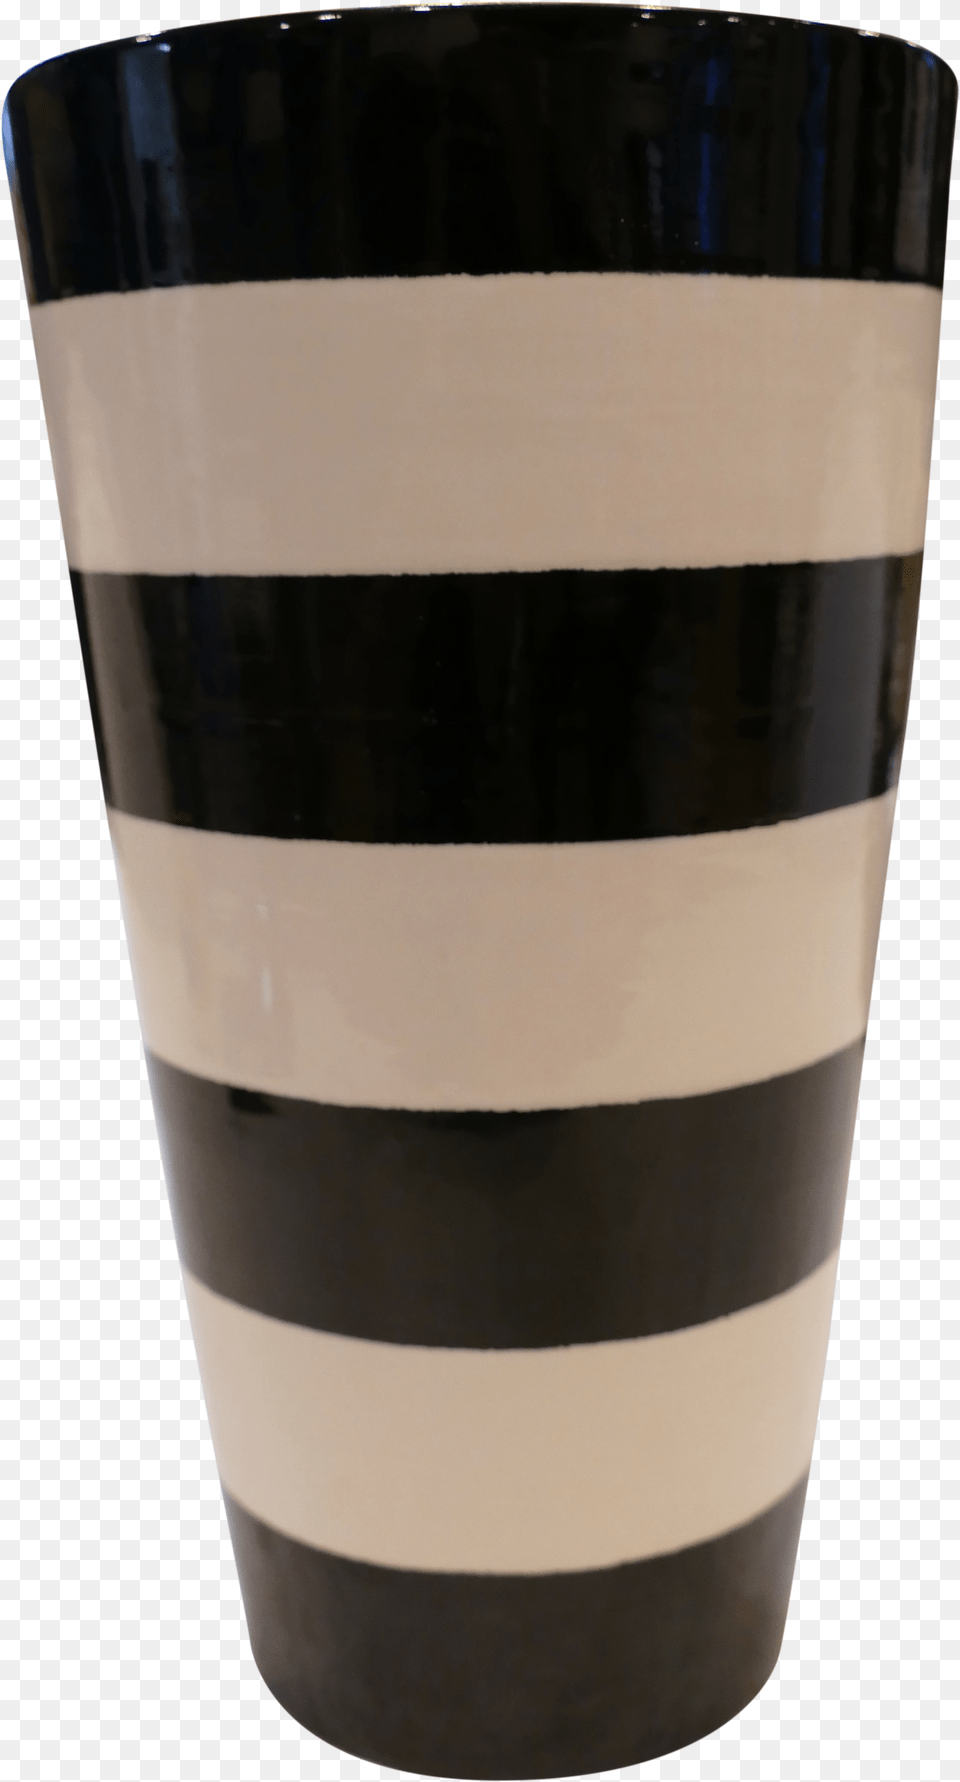 V Vase Canopy In Black Stripe Cylinder Free Transparent Png